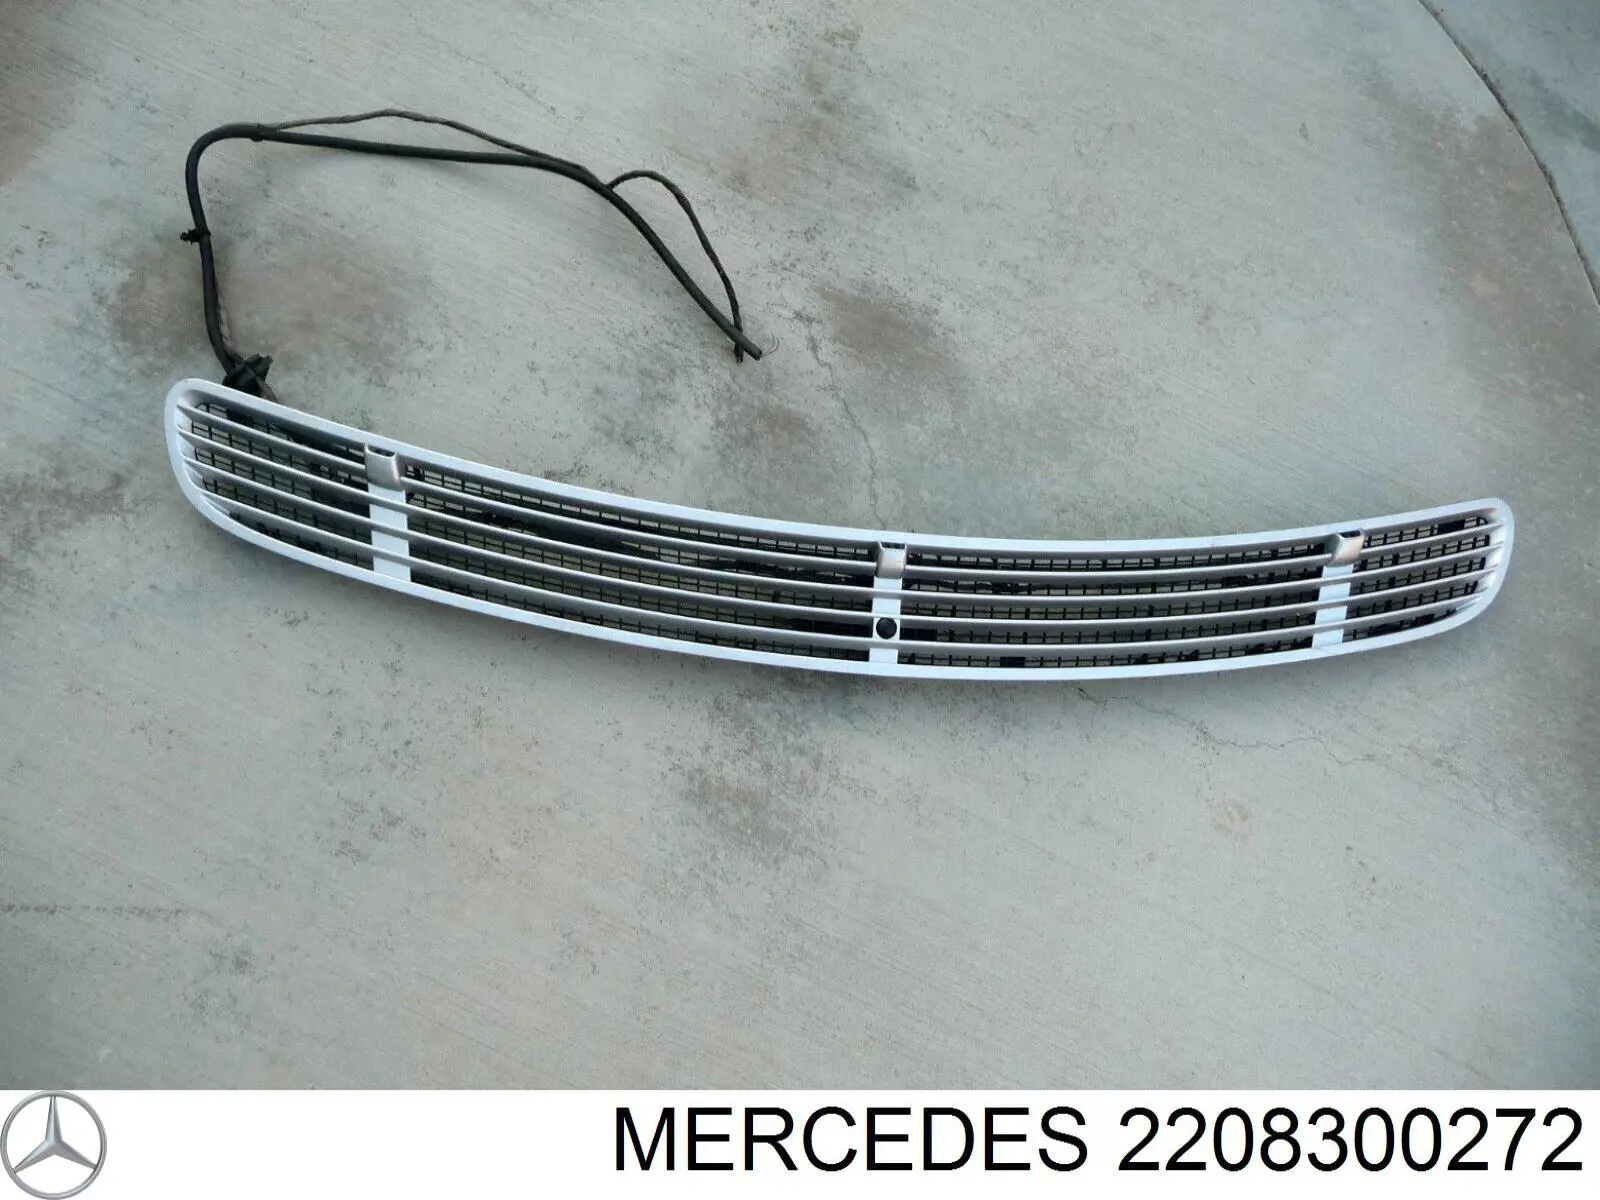 Sensor de luz Mercedes 2208300272